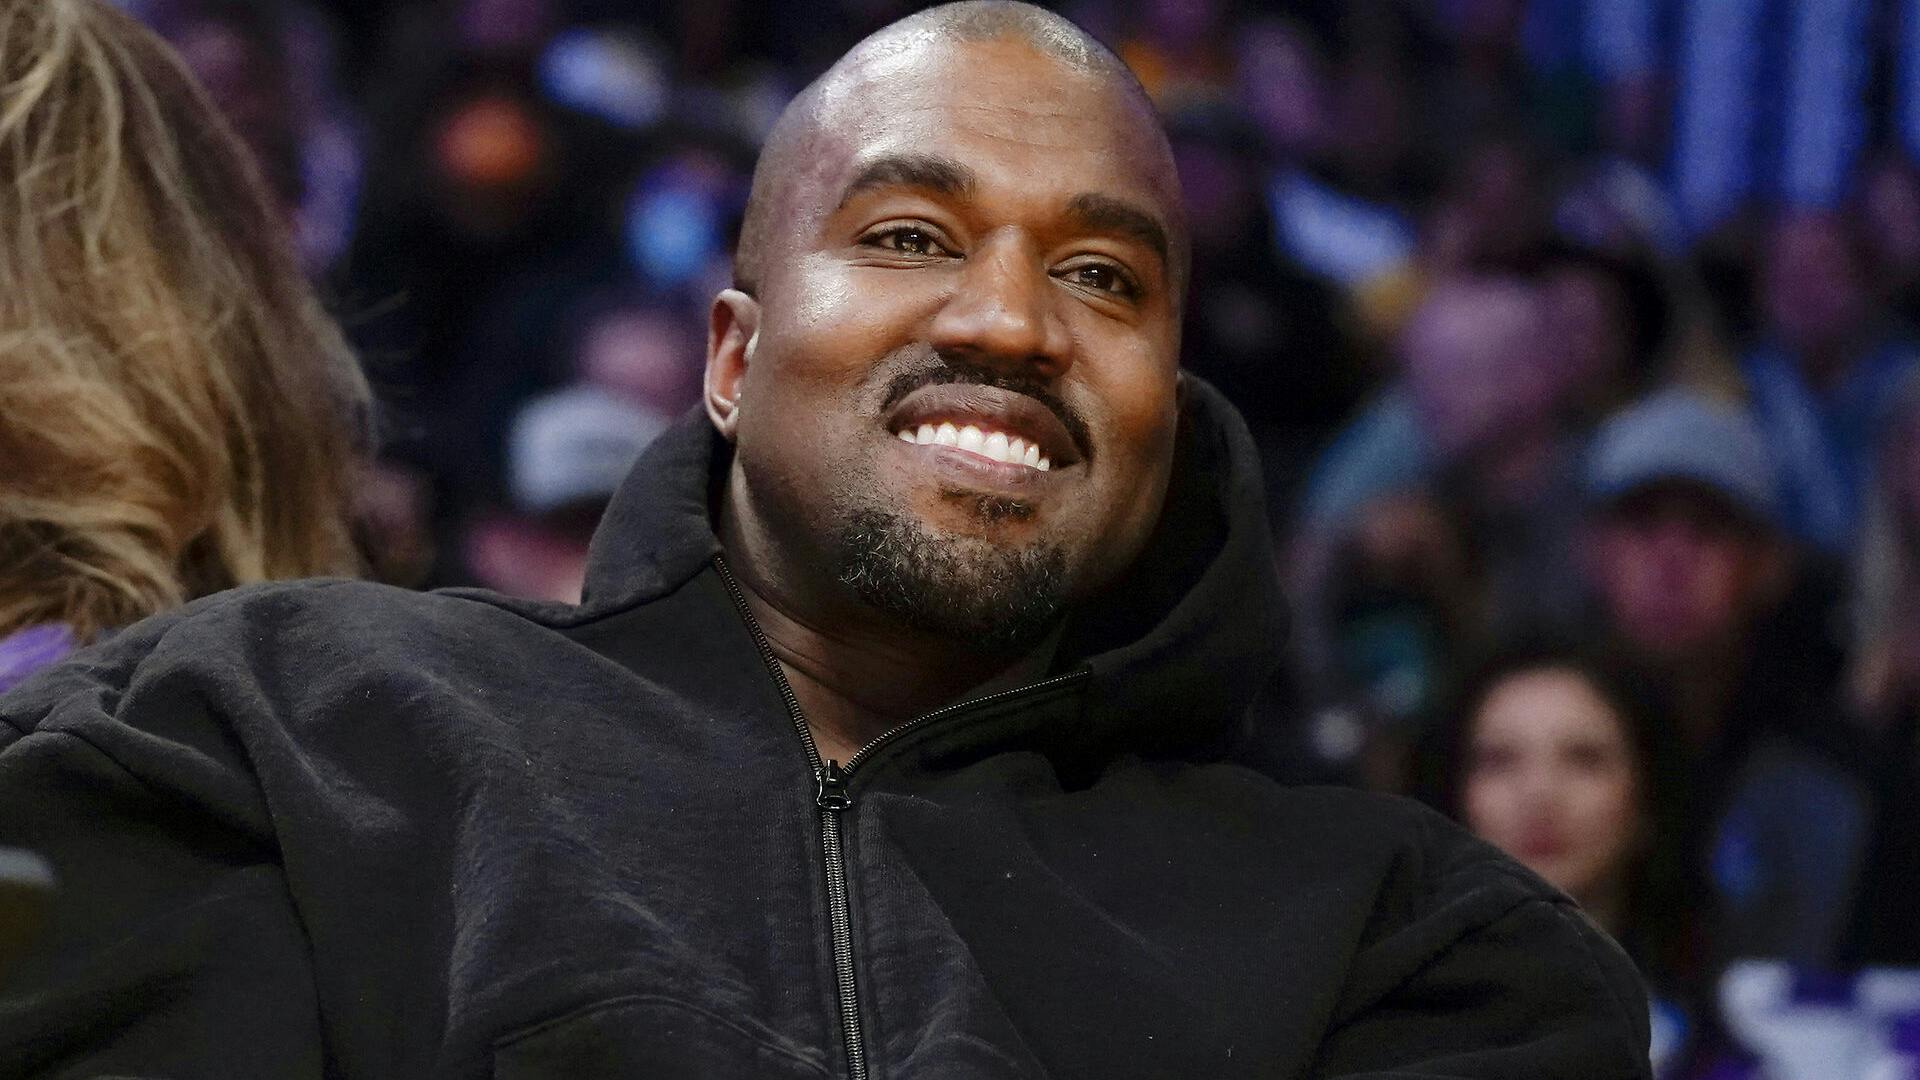 Har Kanye West fundet kærligheden på ny?
